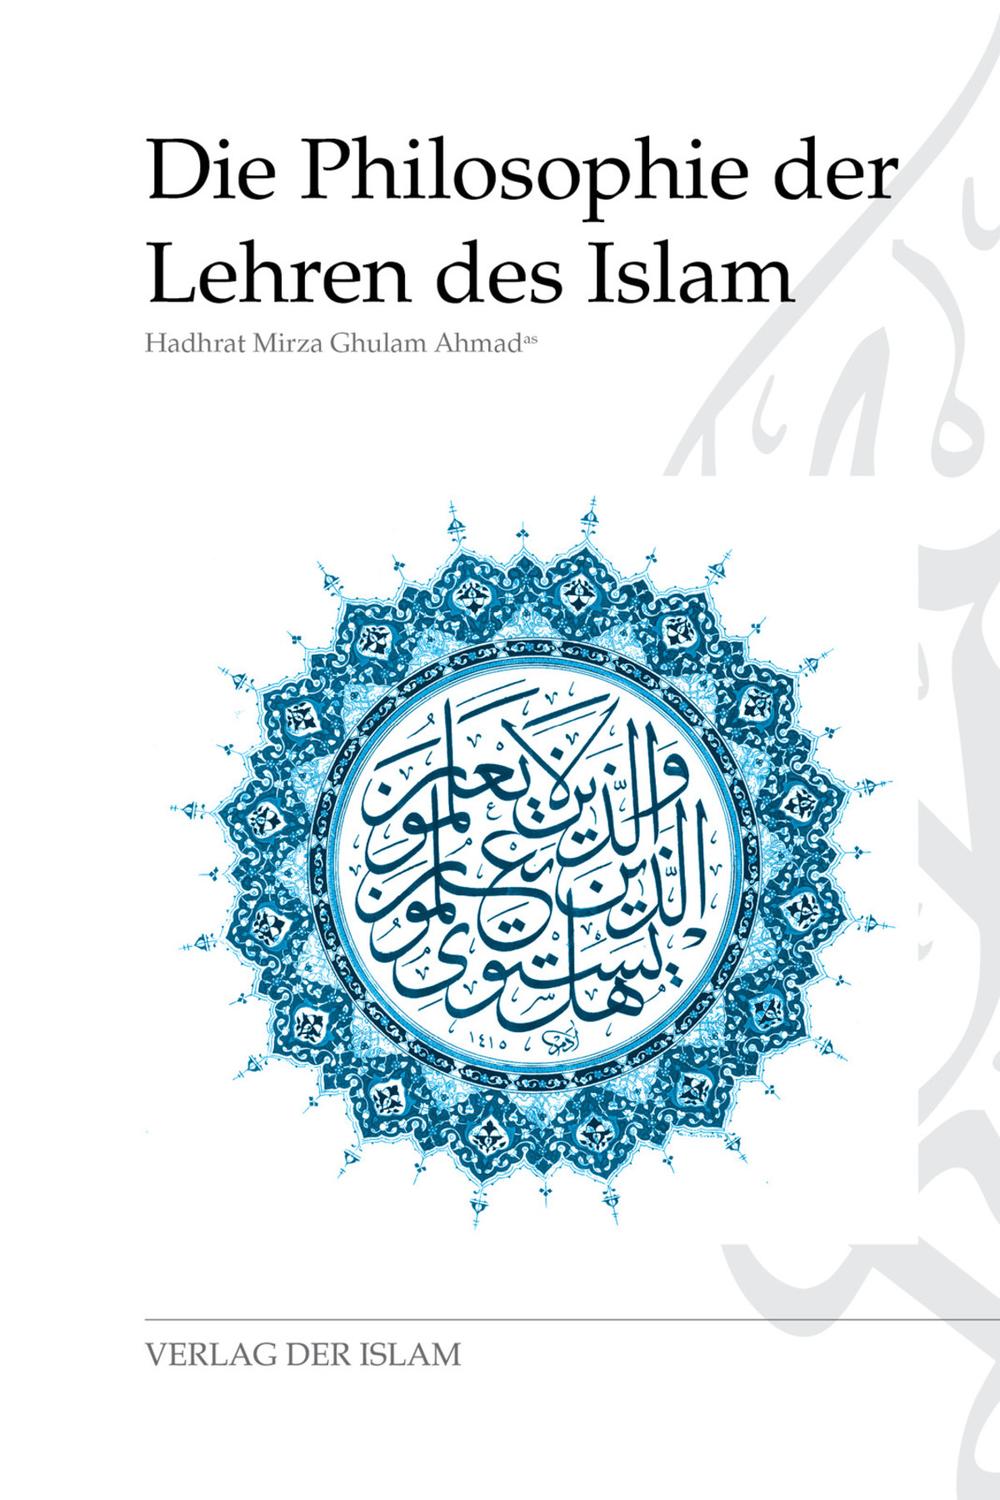 Die Philosophie der Lehren des Islam - Hadhrat Mirza Ghulam Ahmad